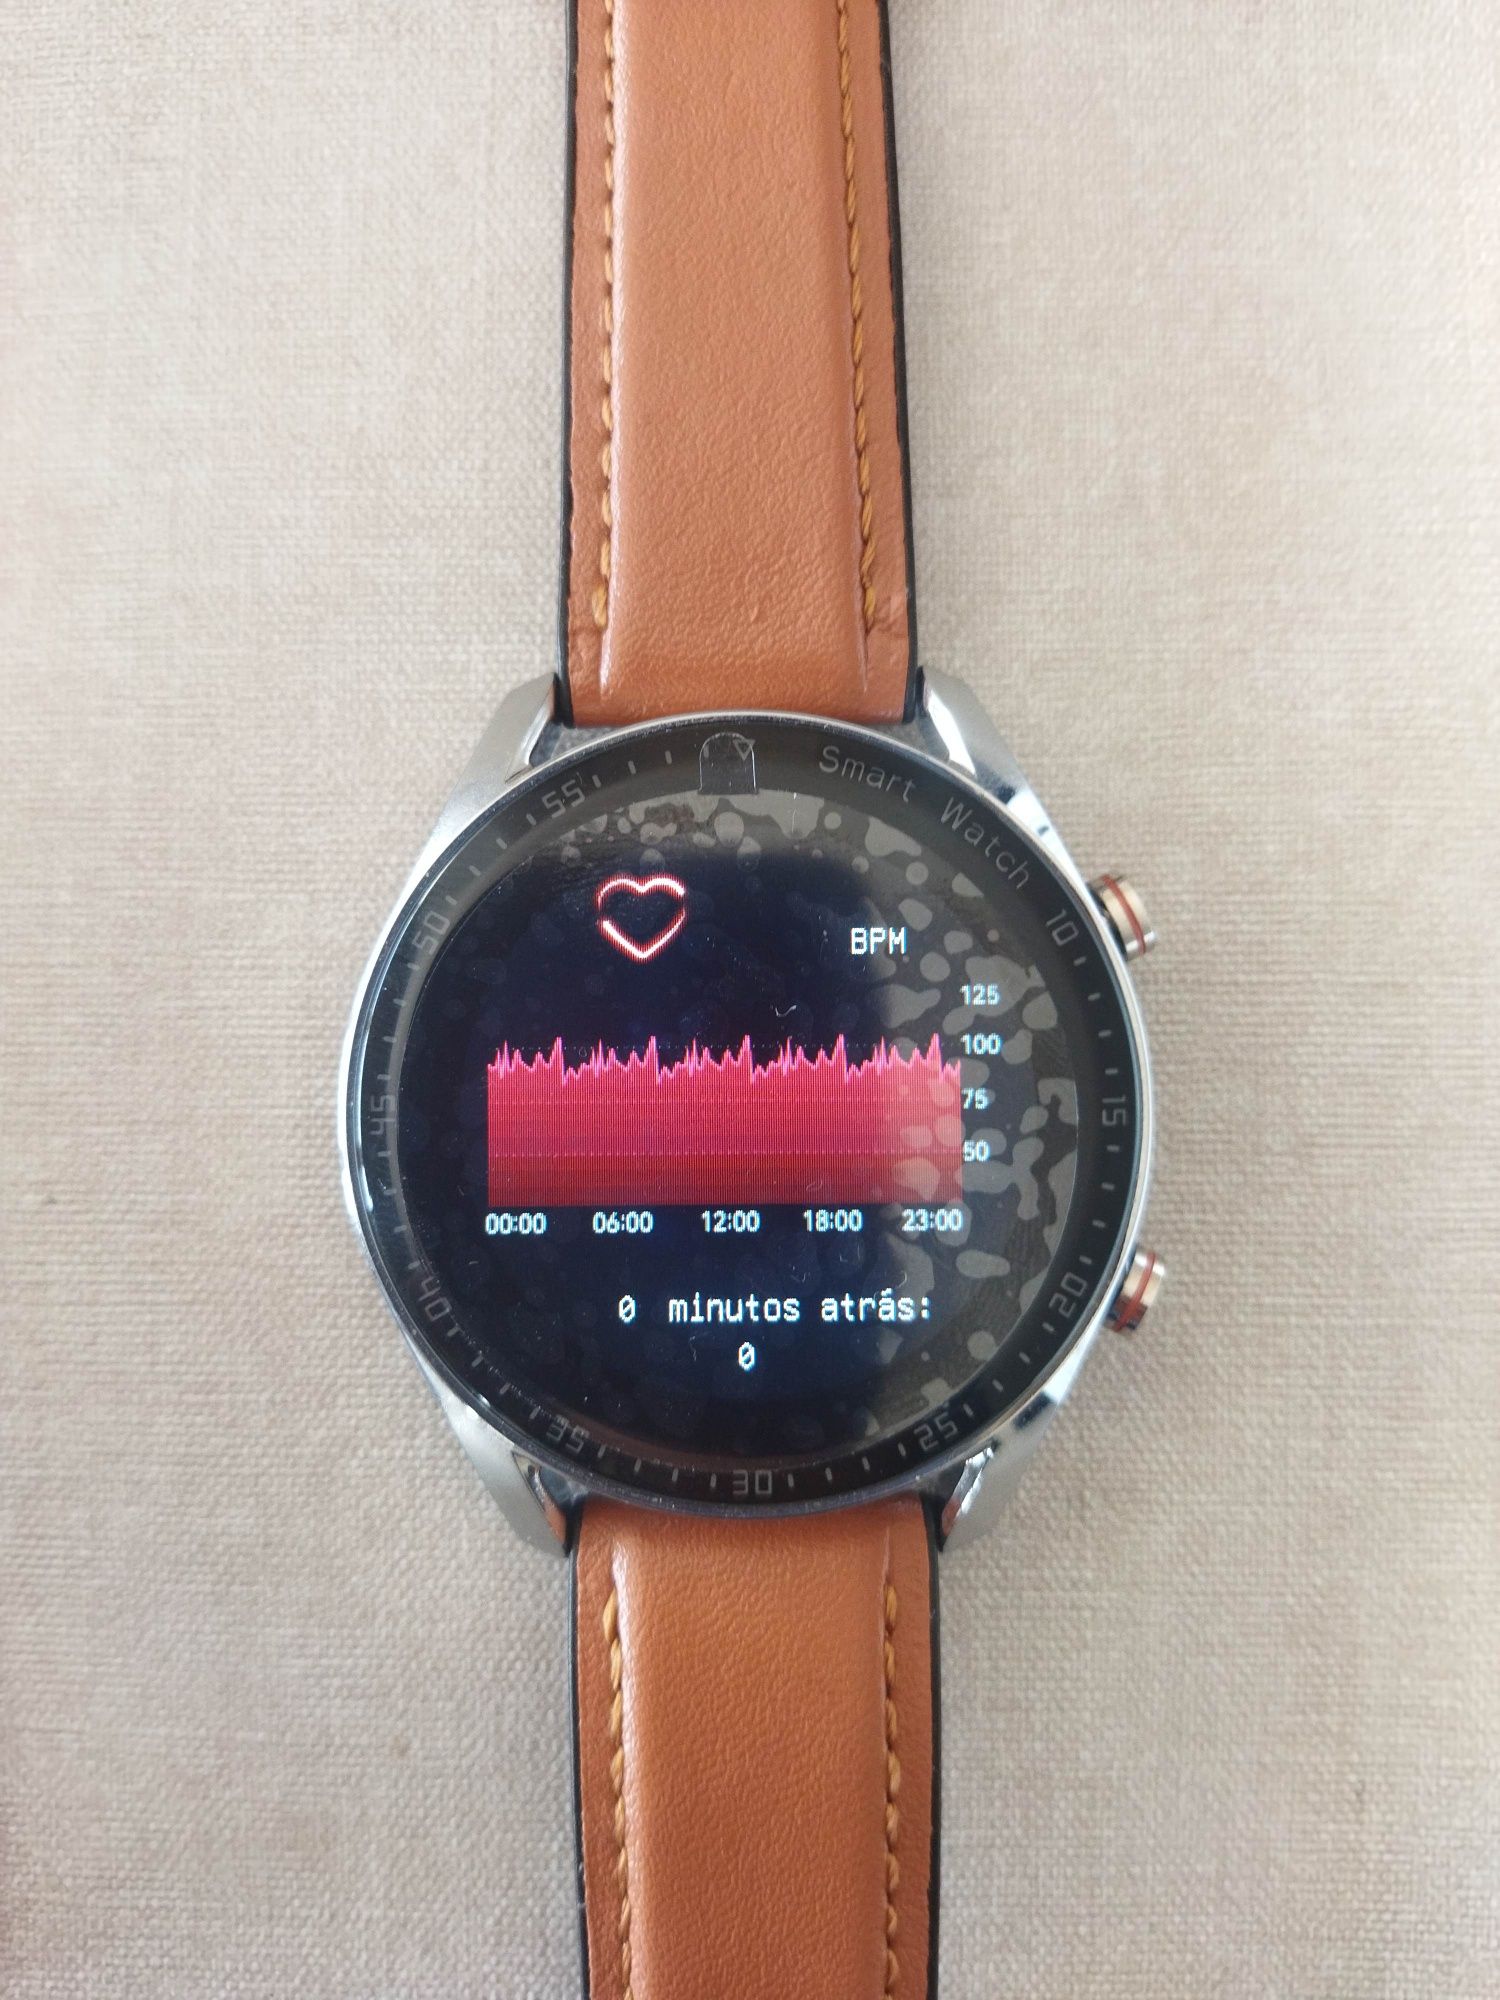 Smart watch smartwatch, muito elegante completo e novo na caixa